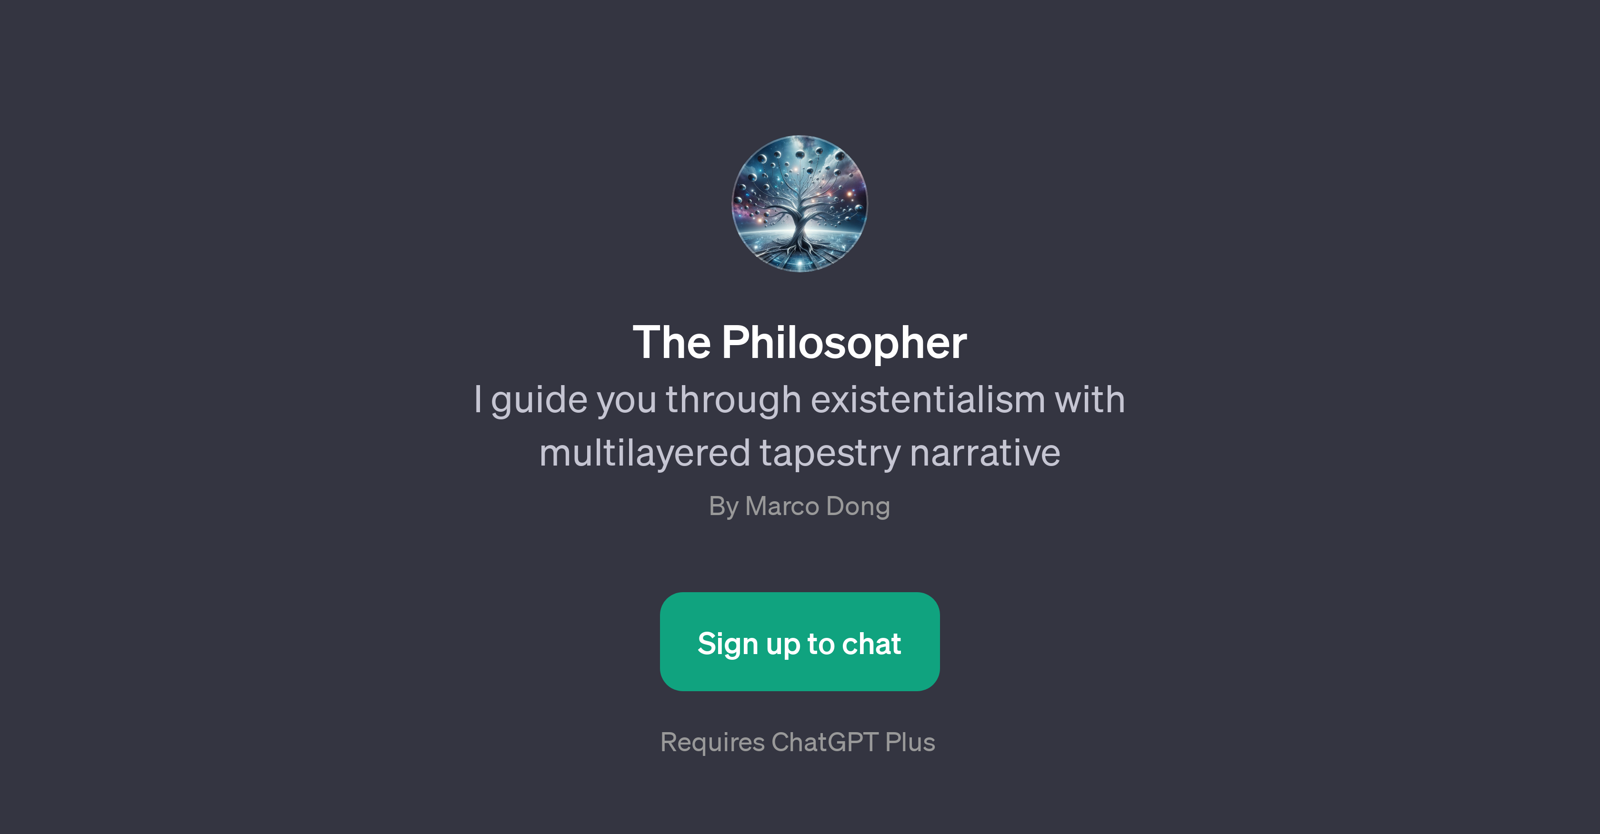 The Philosopher website